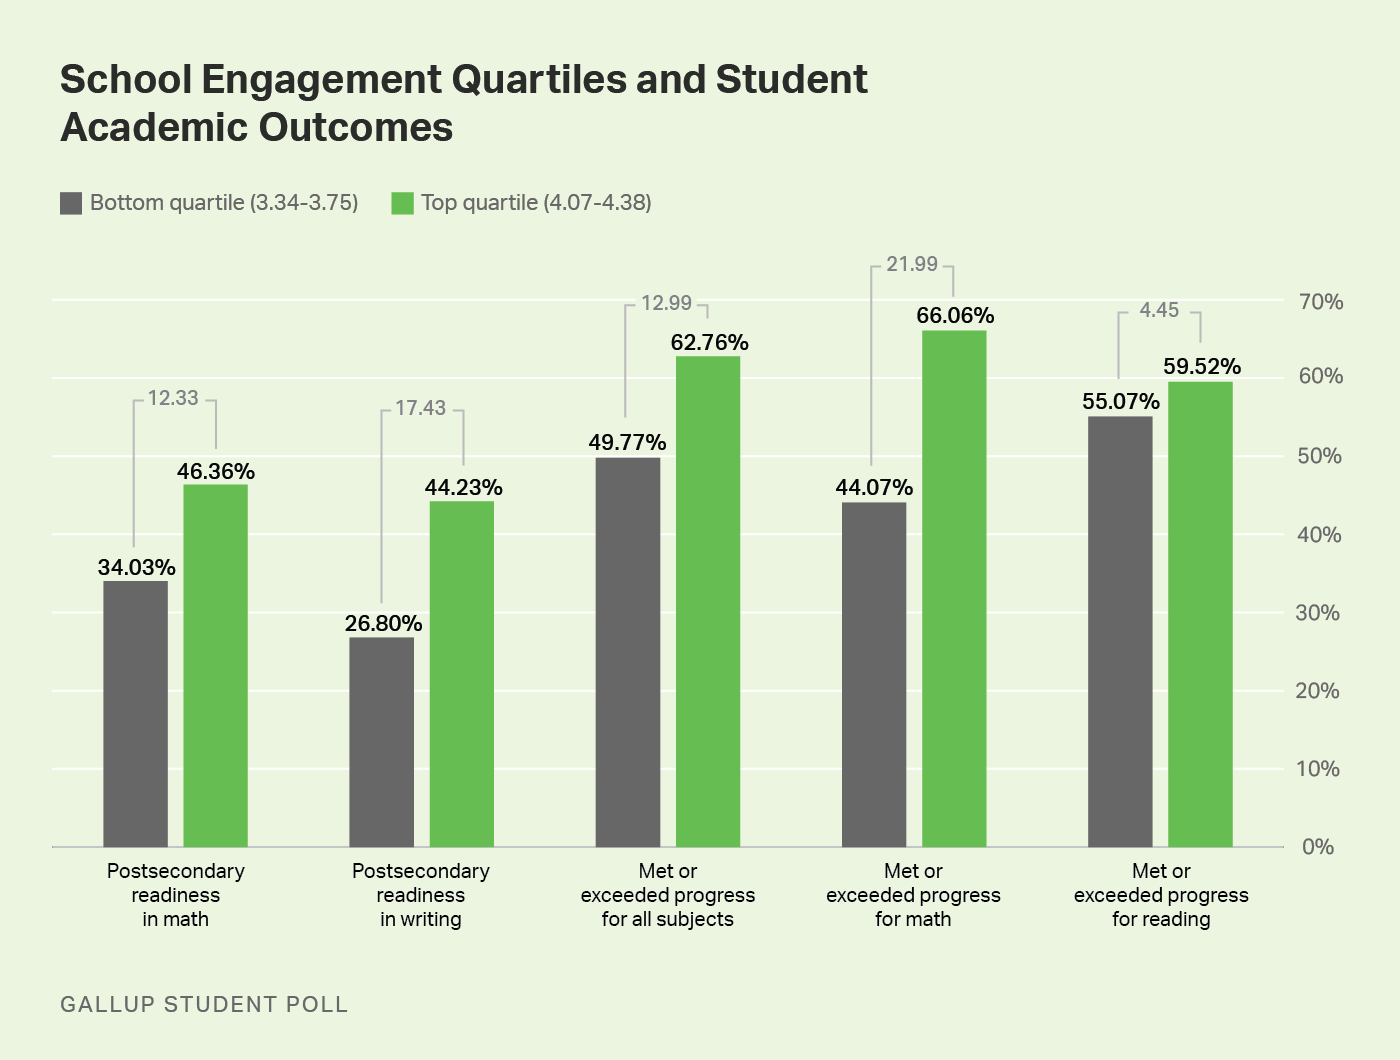 Bar graph showing student engagement quartiles and student academic outcomes of top quartile versus bottom quartile.